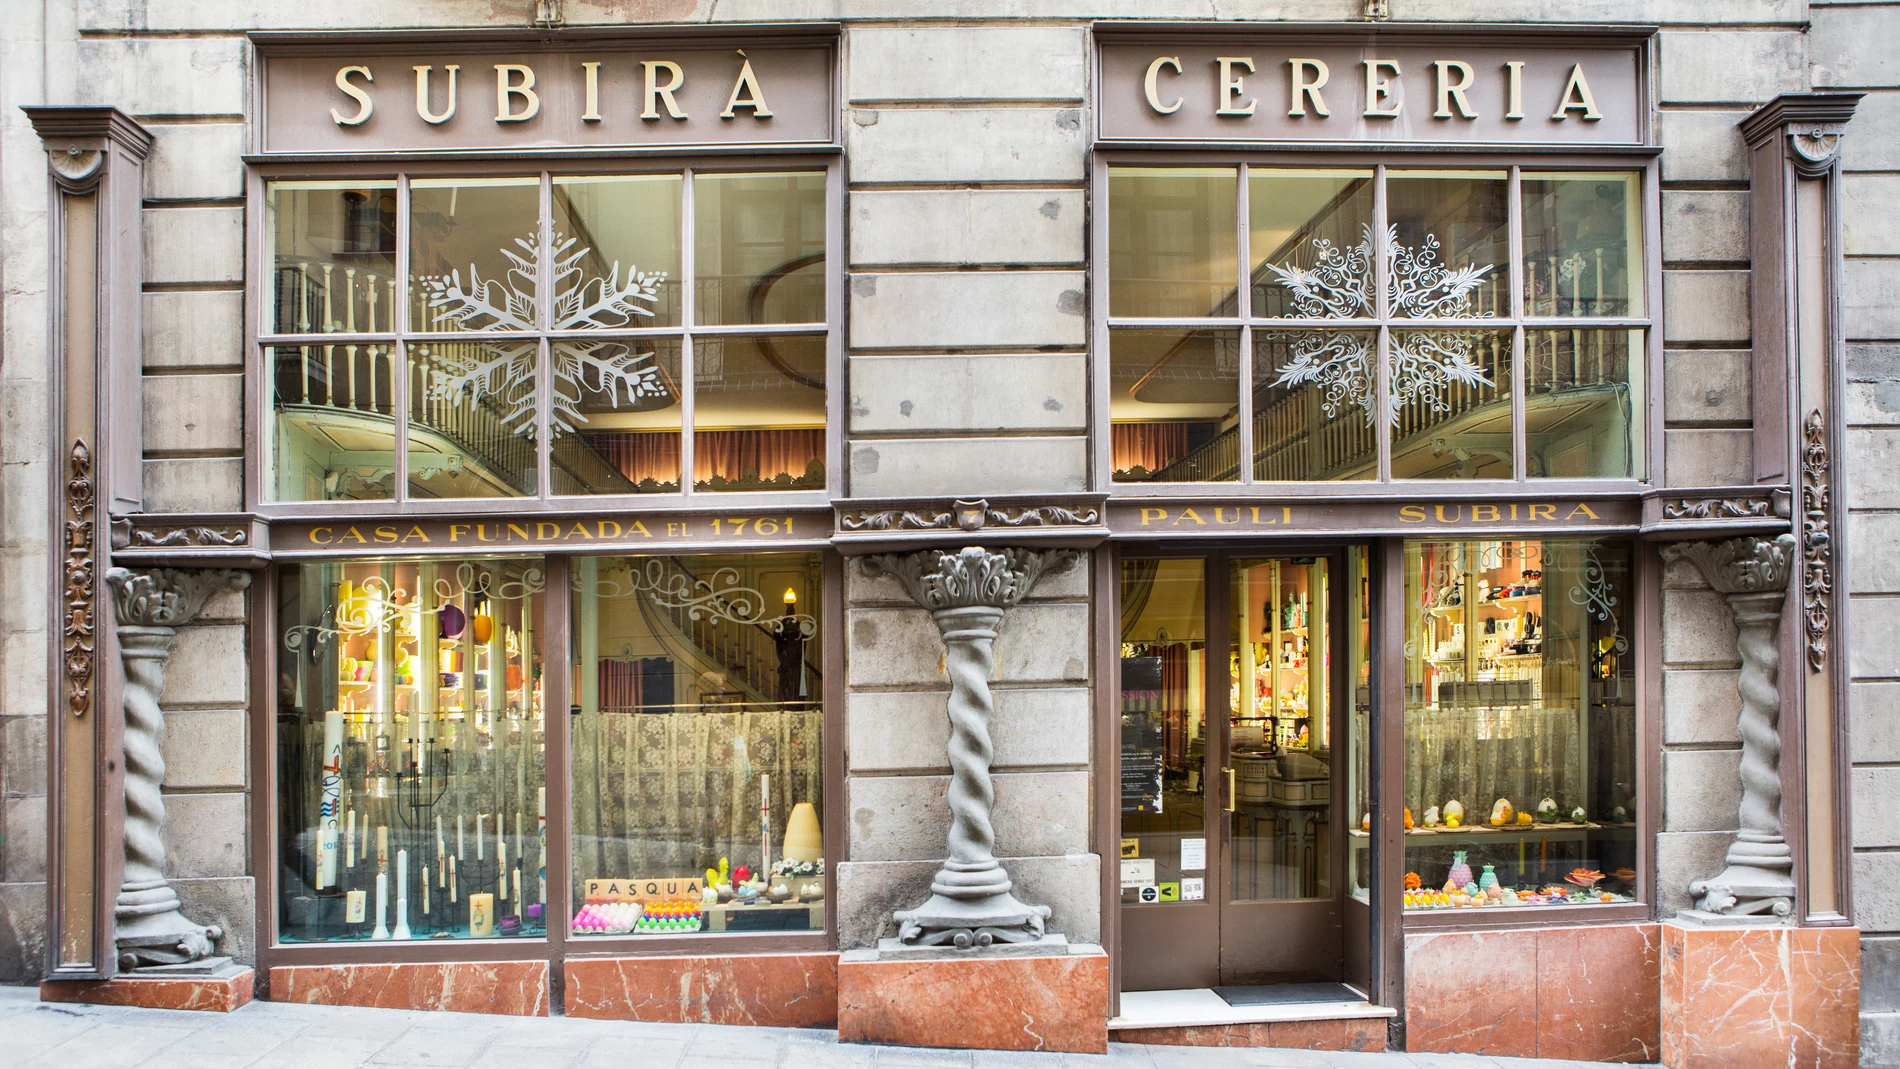 Esta es la tienda más antigua de Barcelona que aún sigue abierta